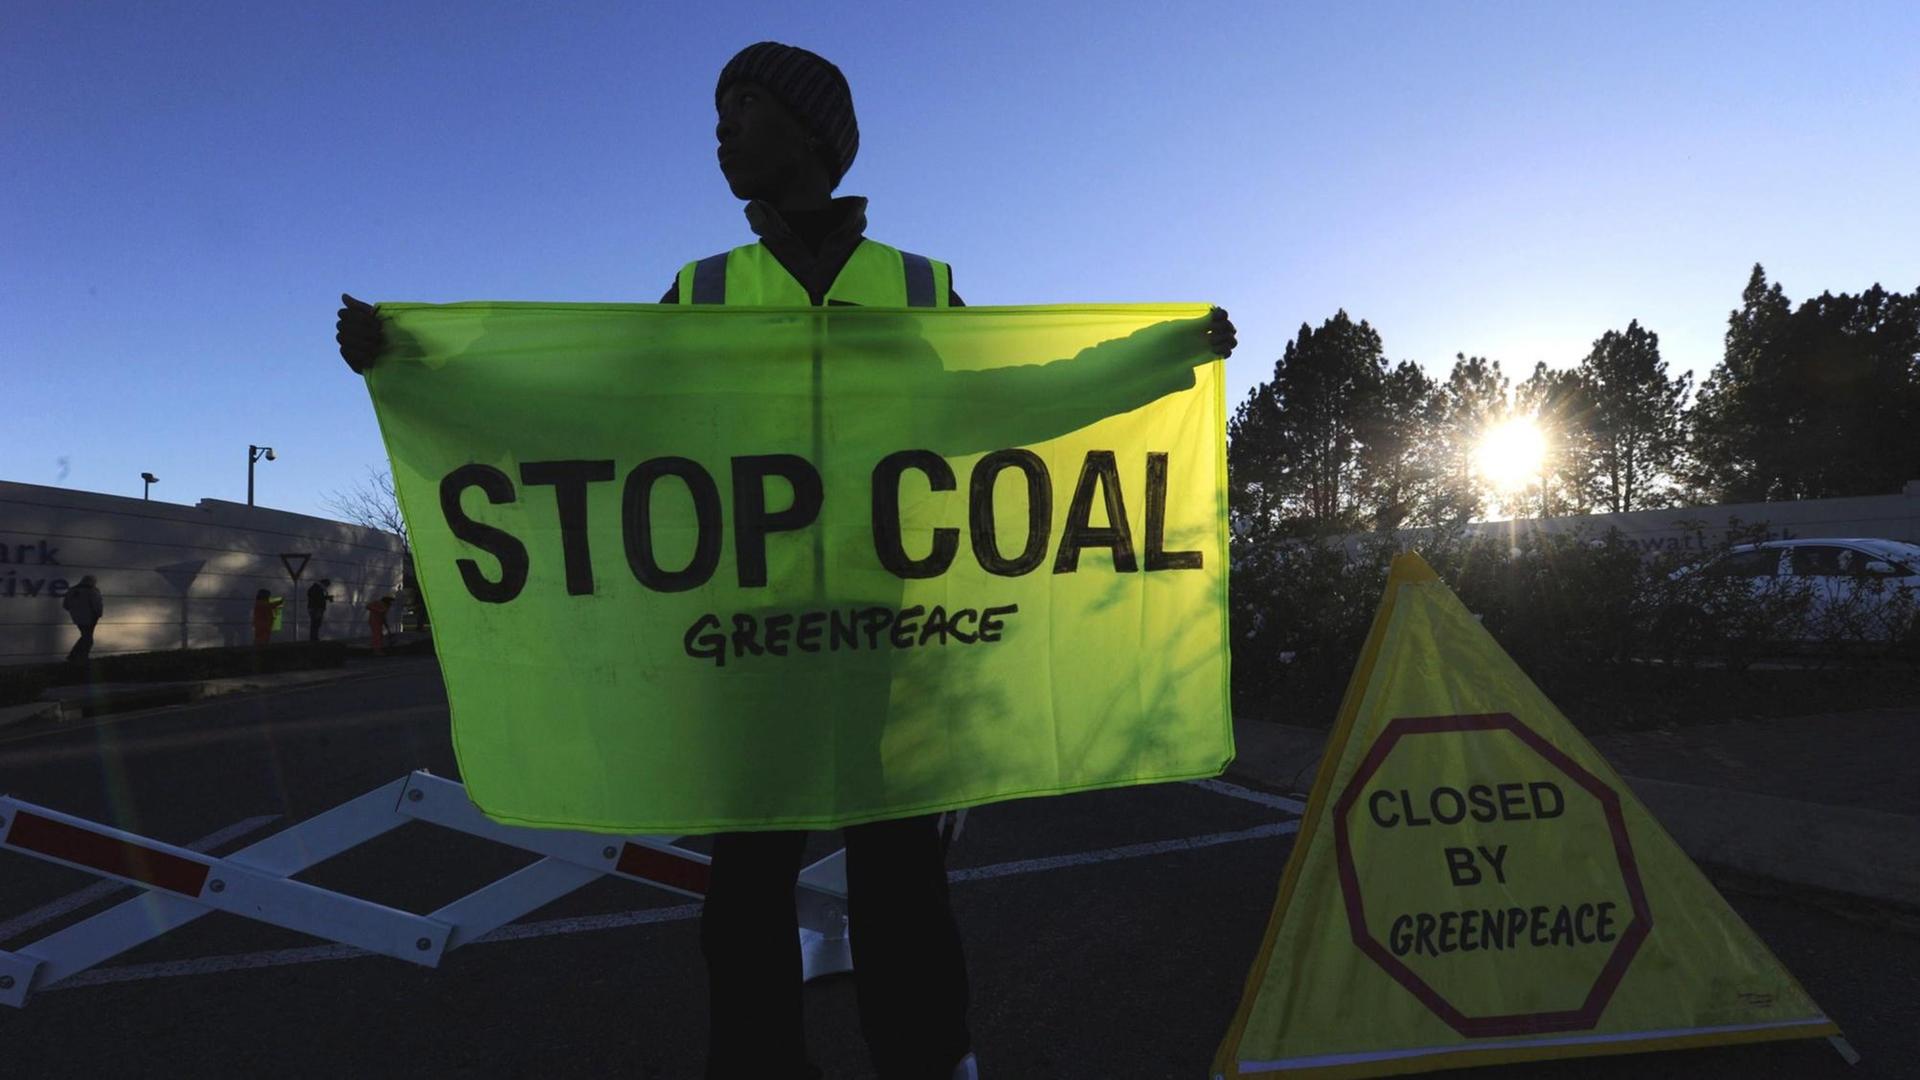 Ein südafrikanischer Greenpeace-Aktivist hält ein Flagge mit der Aufschrift "Stop Coal" in Händen.